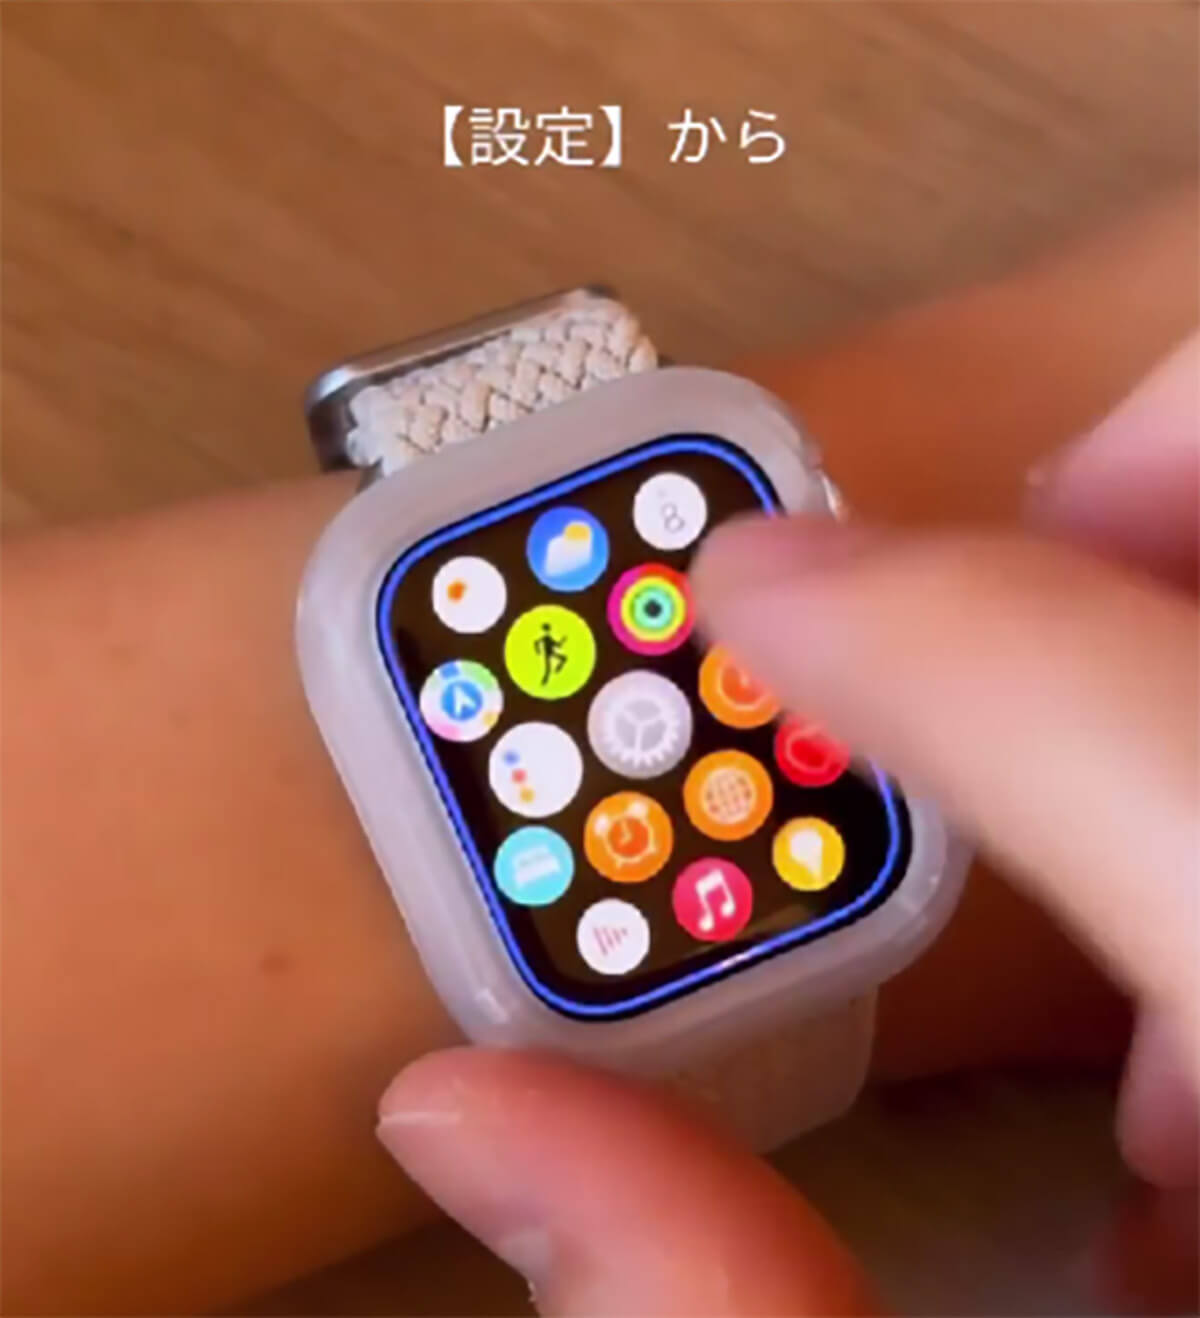 Apple Watchを購入したら、最初にやるべき設定2_設定方法01